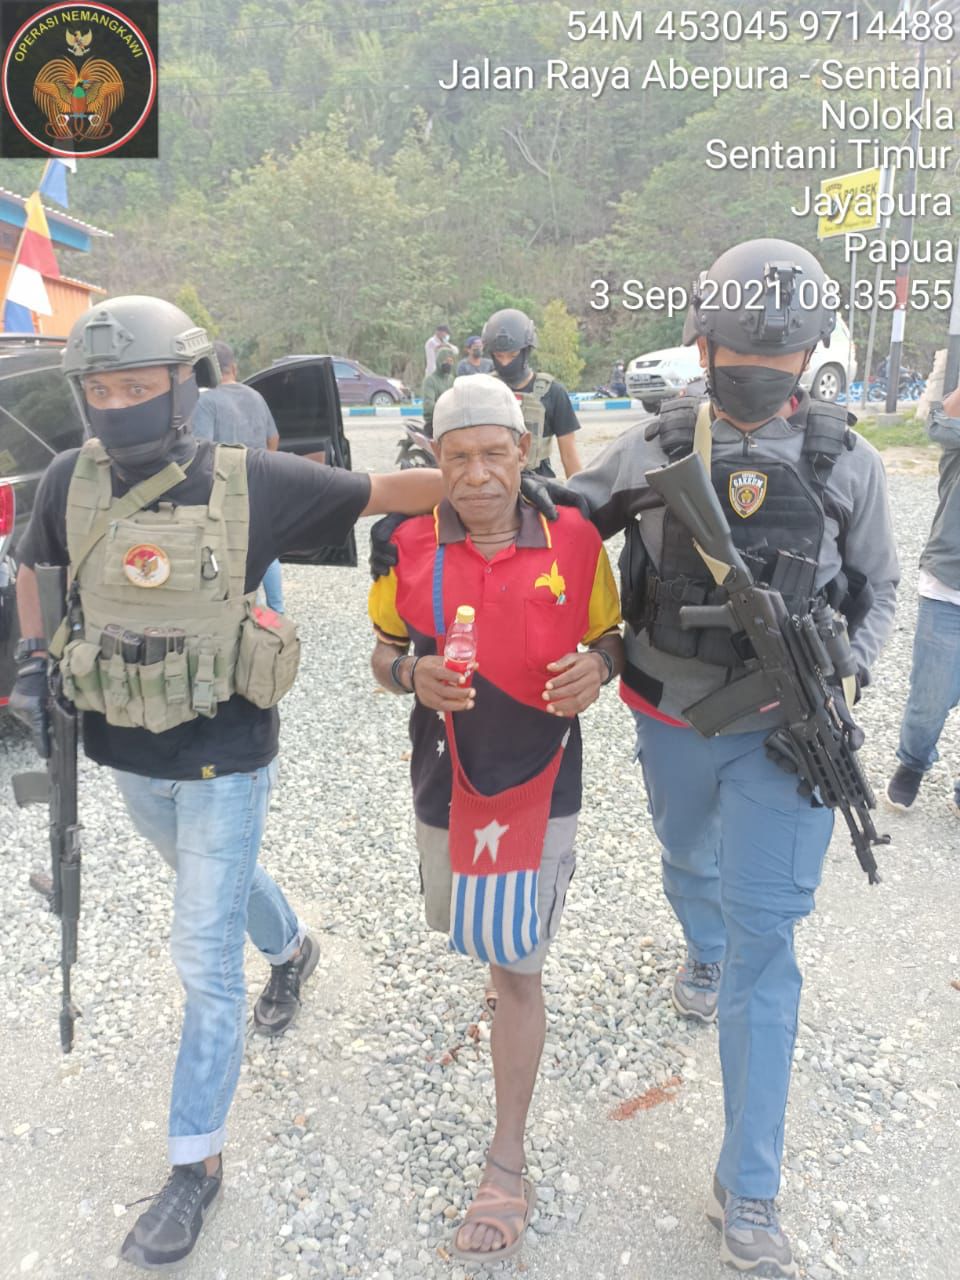 Tangkap Kelompok Kriminal Bersenjata,  Satgas Nemangkawi Sita 3 Pucuk Senpi M16